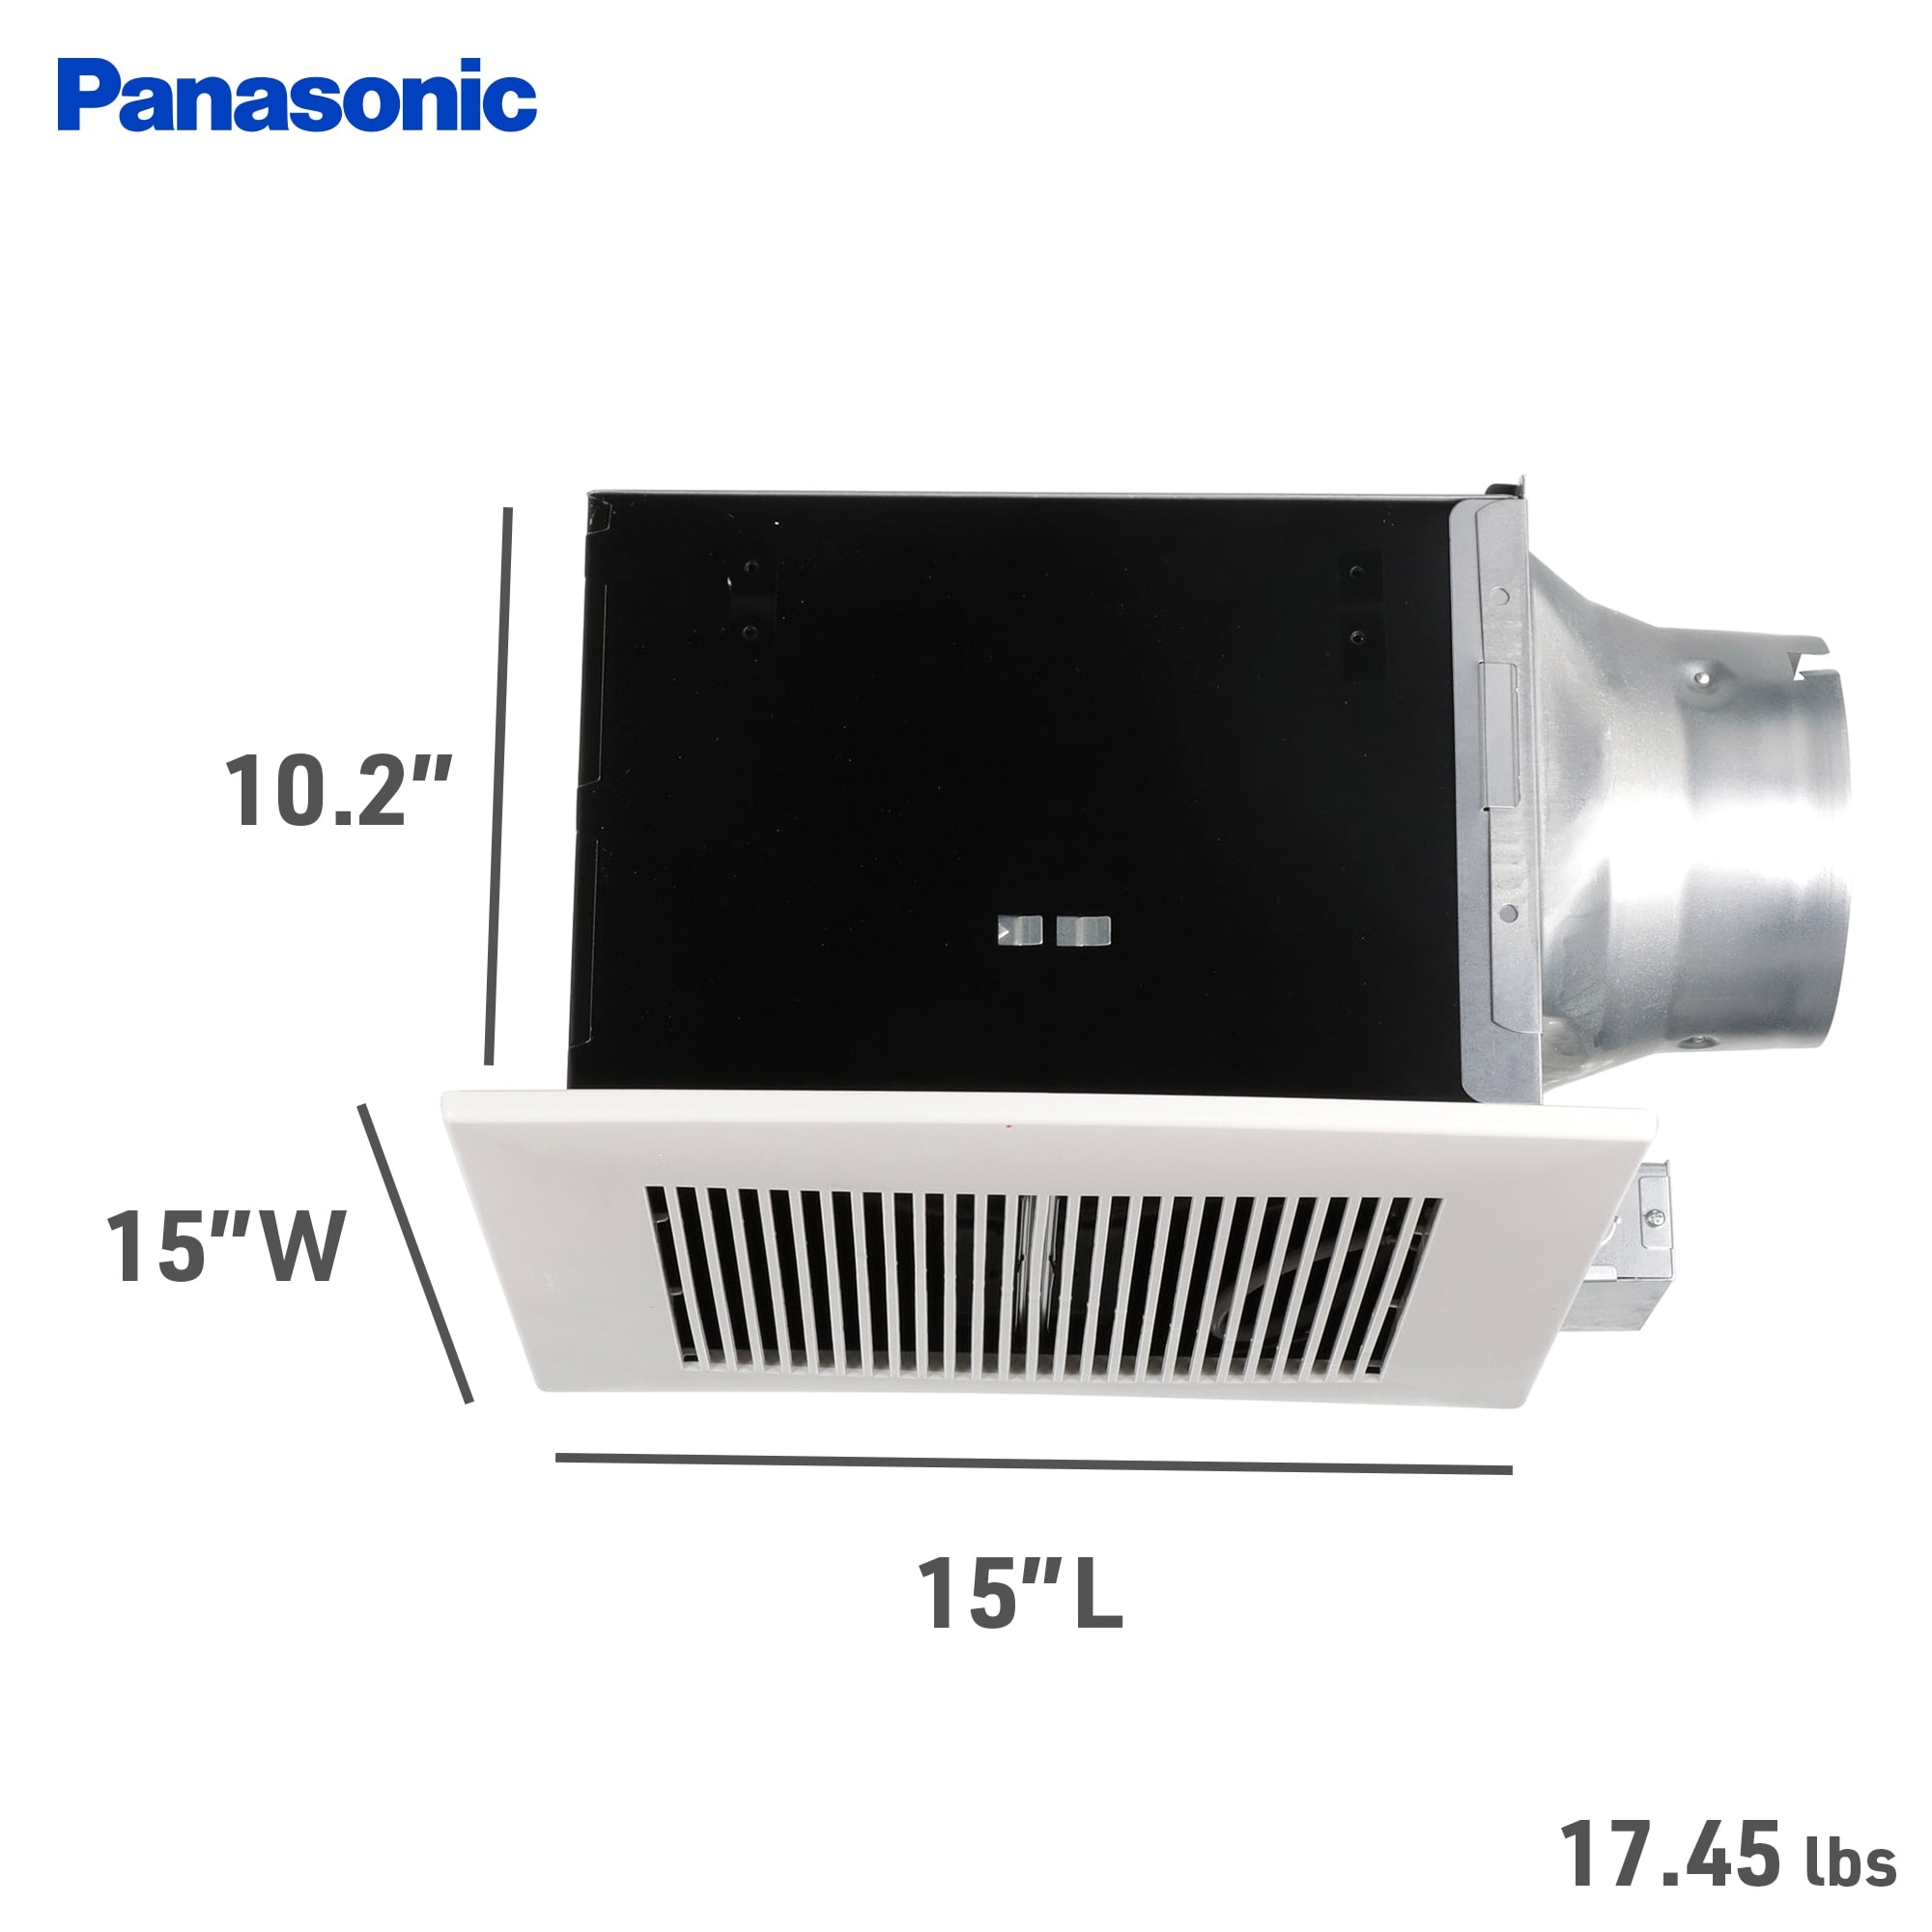 Panasonic WhisperCeiling 2-Sone 290-CFM White Bathroom Fan ENERGY 